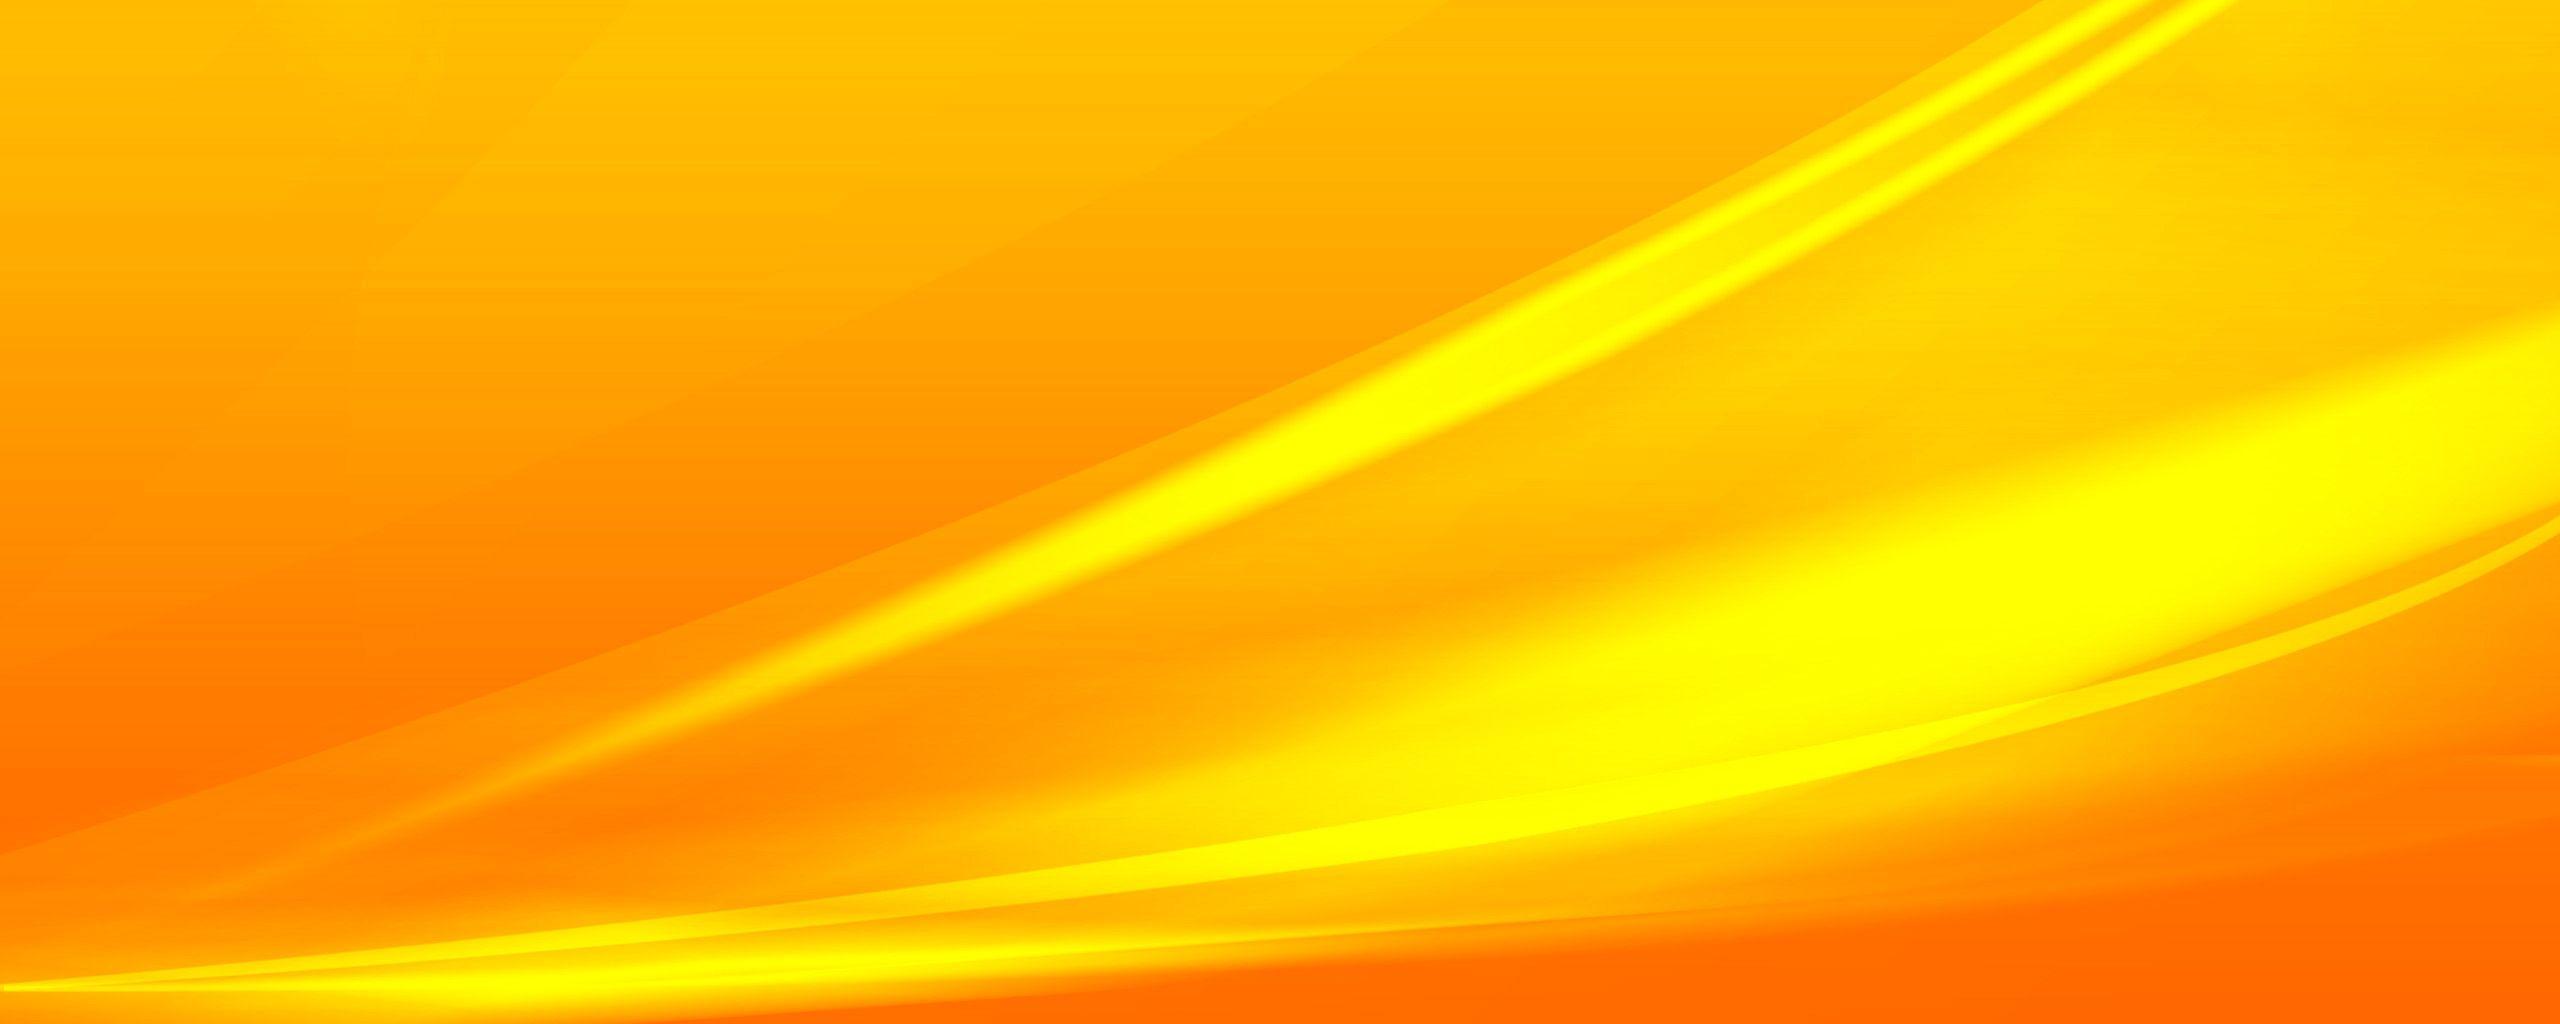 Hình nền màu cam và vàng - Top Những Hình Ảnh Đẹp